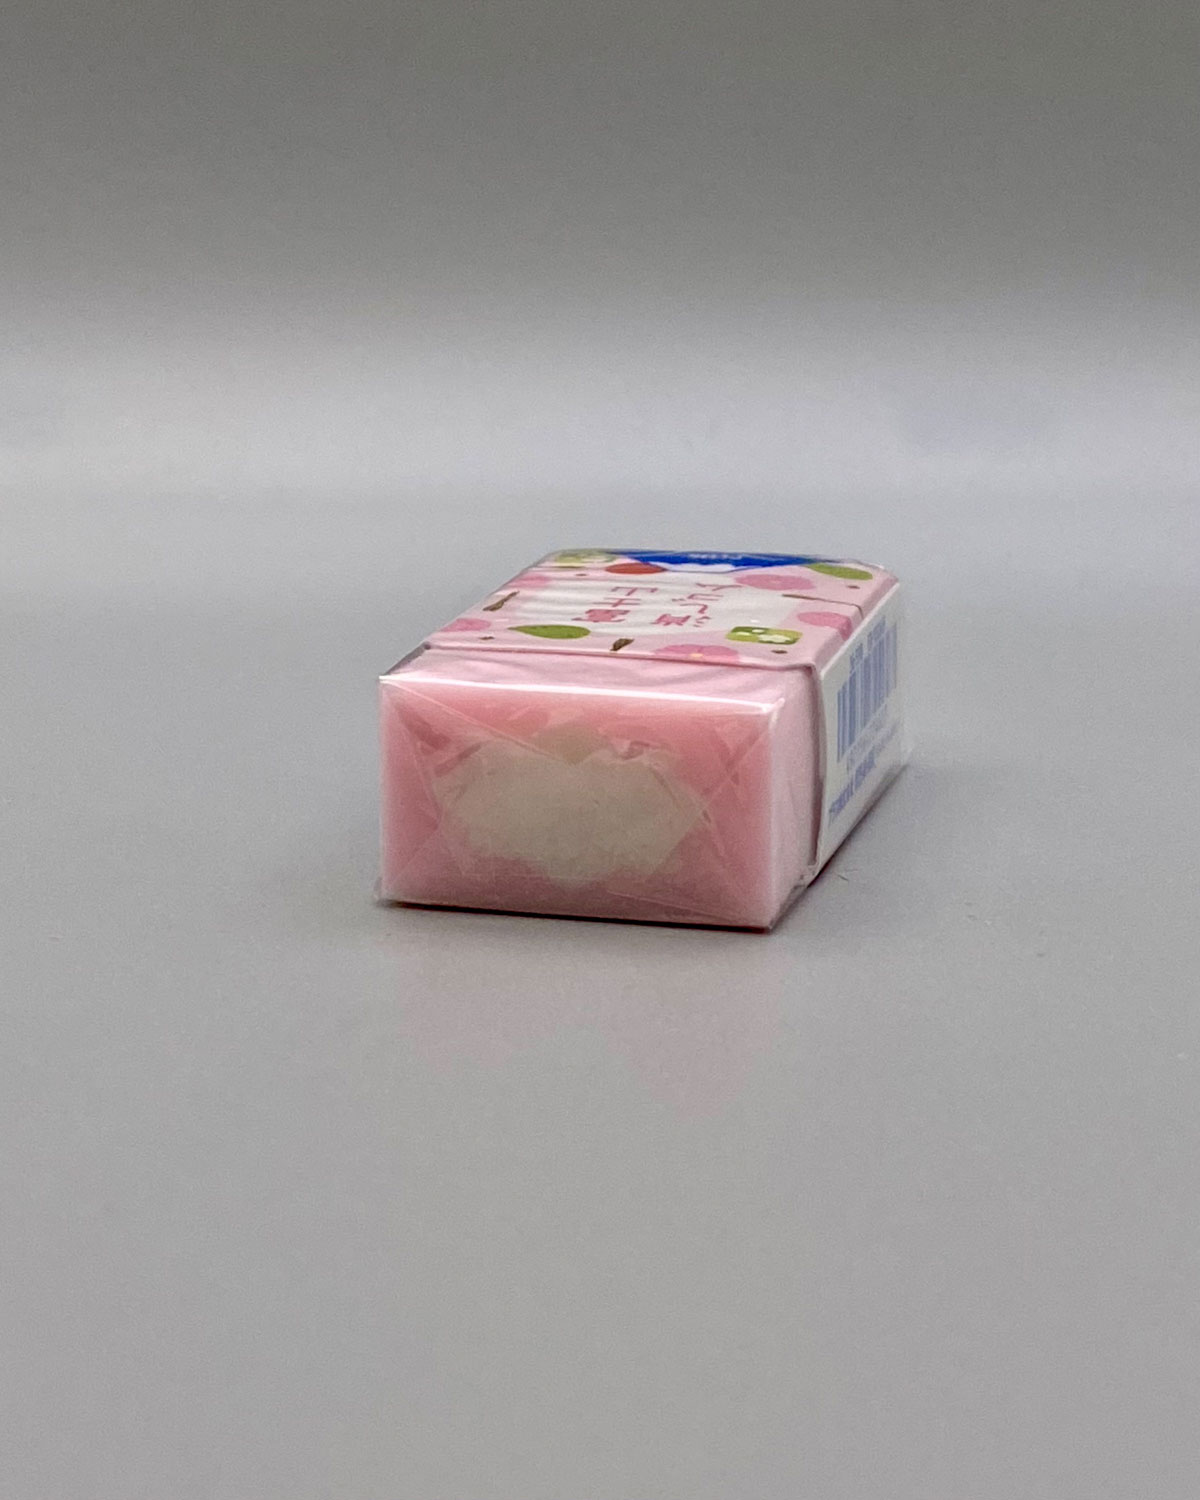 plus fuji pink spring eraser